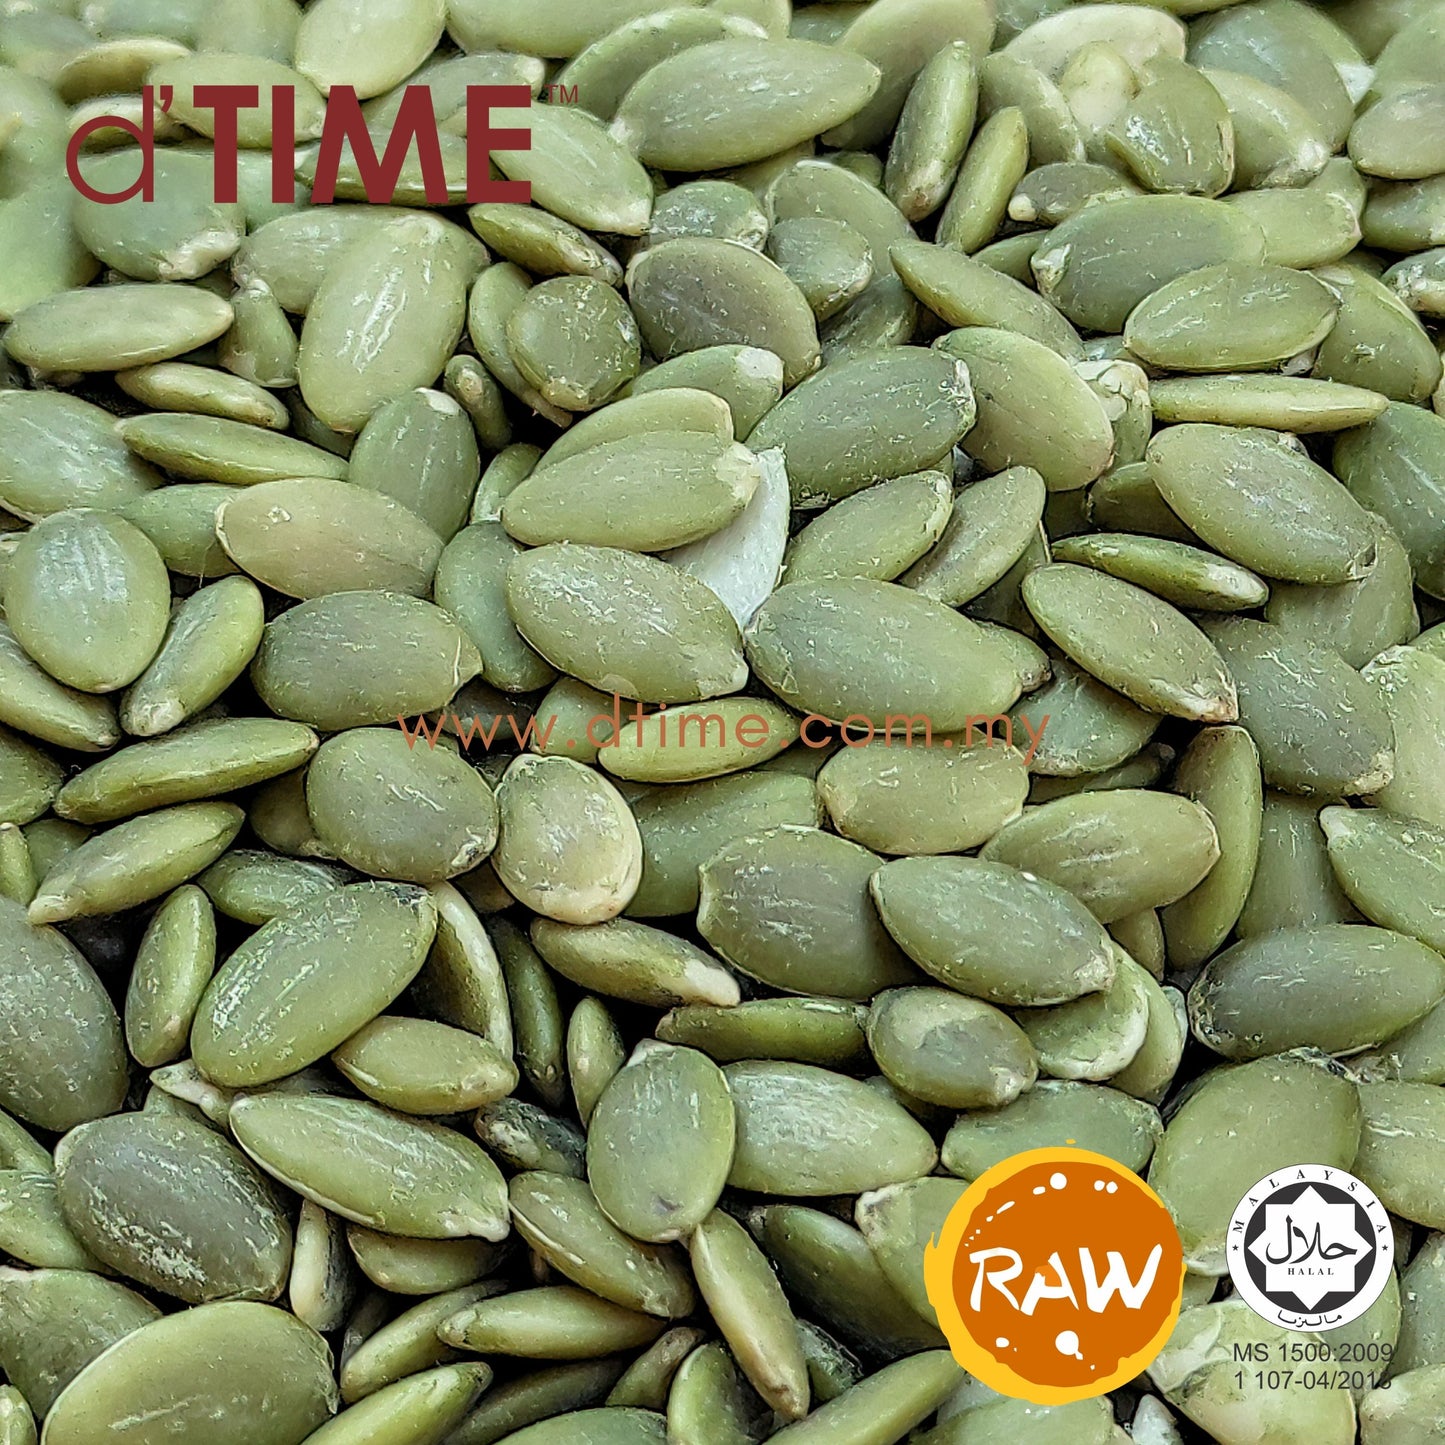 d'TIME Raw Green Pumpkin Seeds (1kg),500g,200g,100g